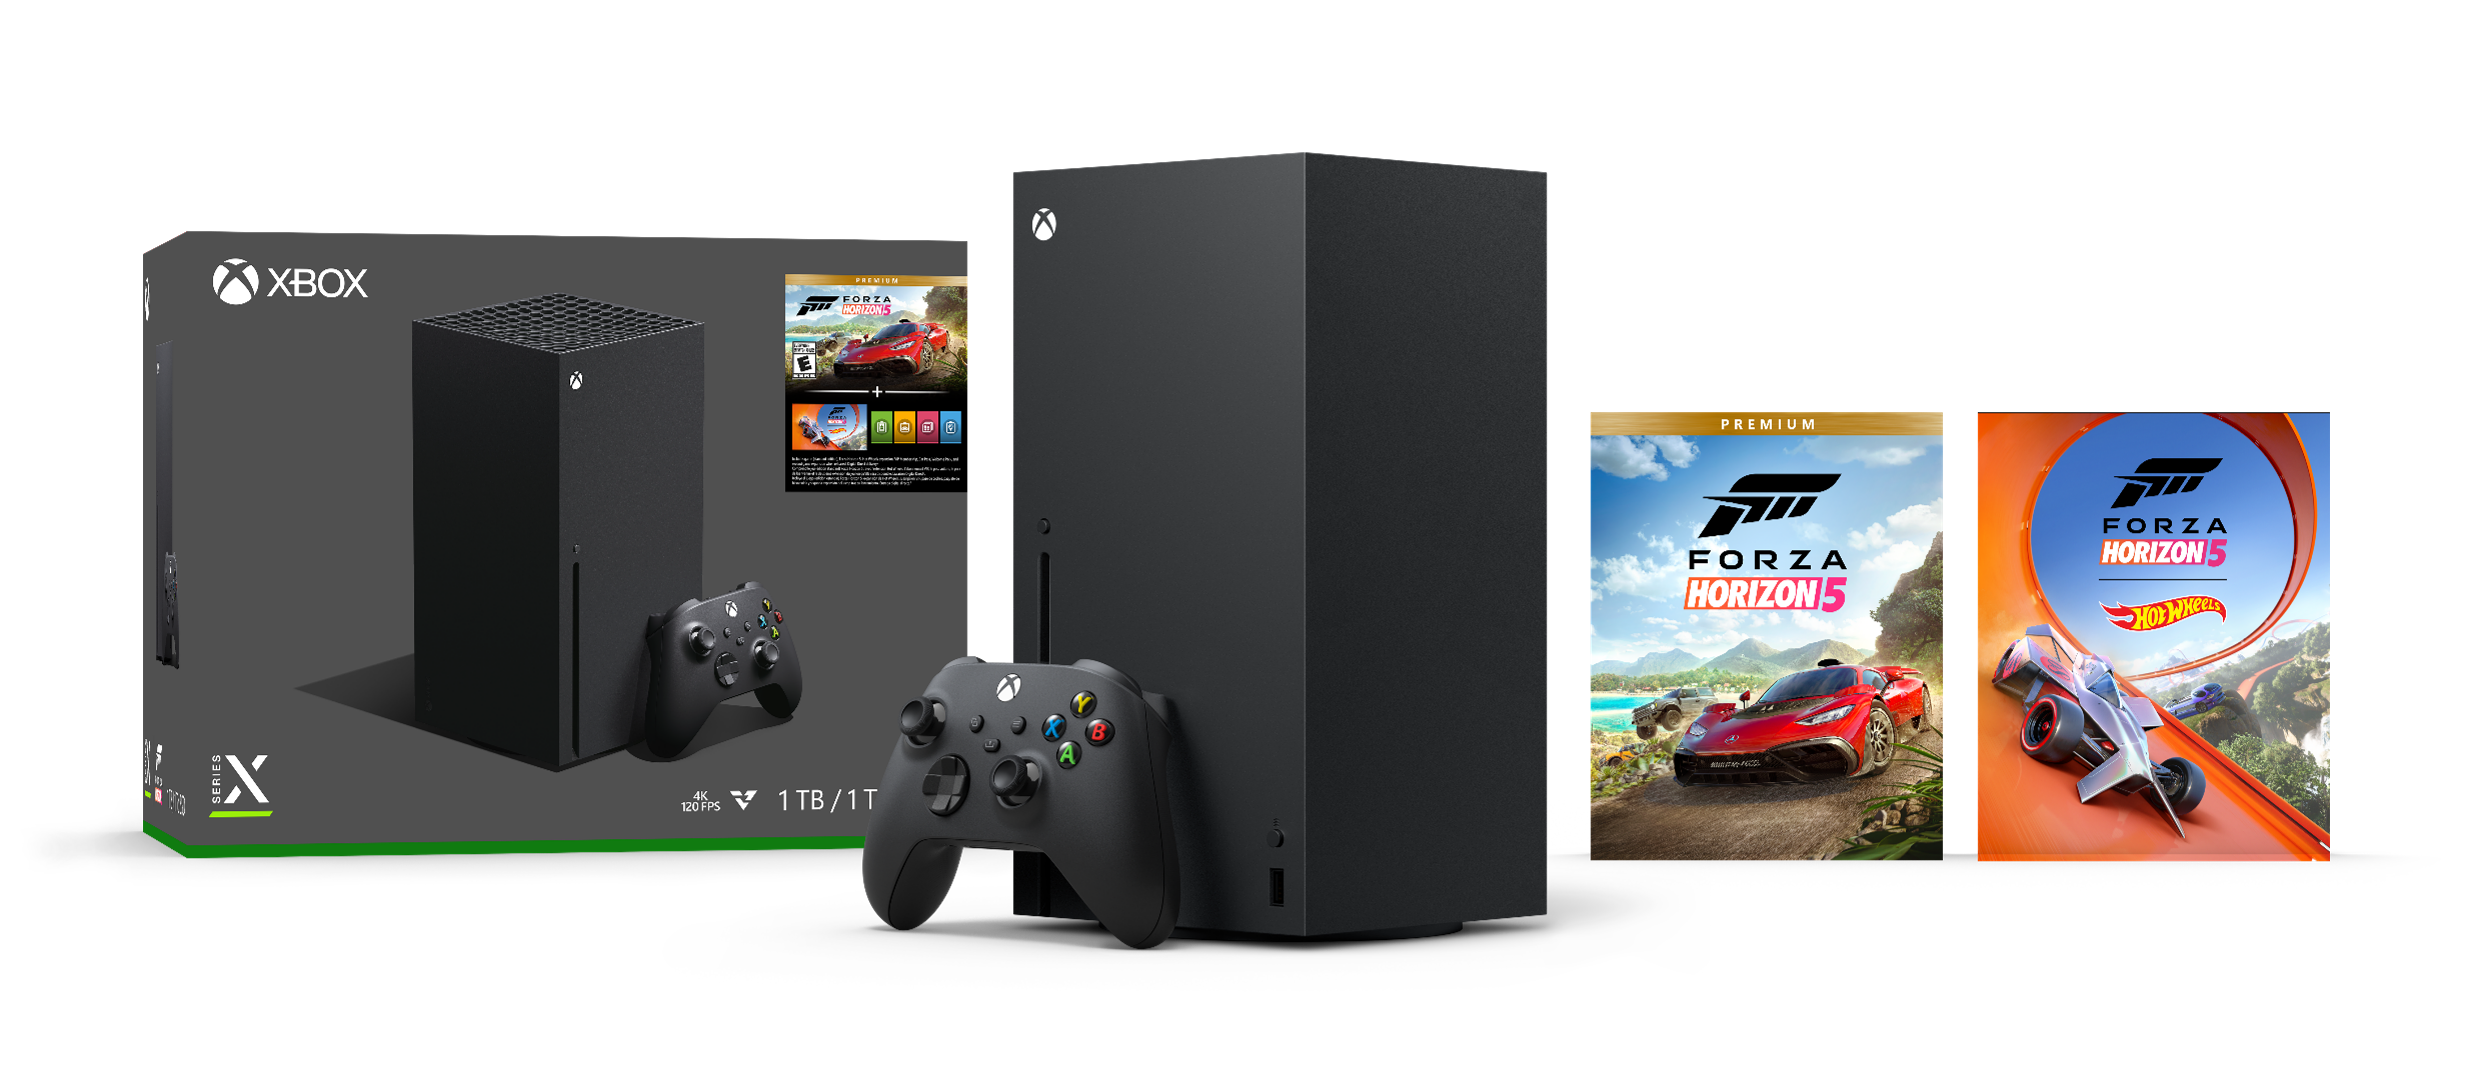 Xbox Series X Forza Horizon5 同梱版 2台セット www.krzysztofbialy.com